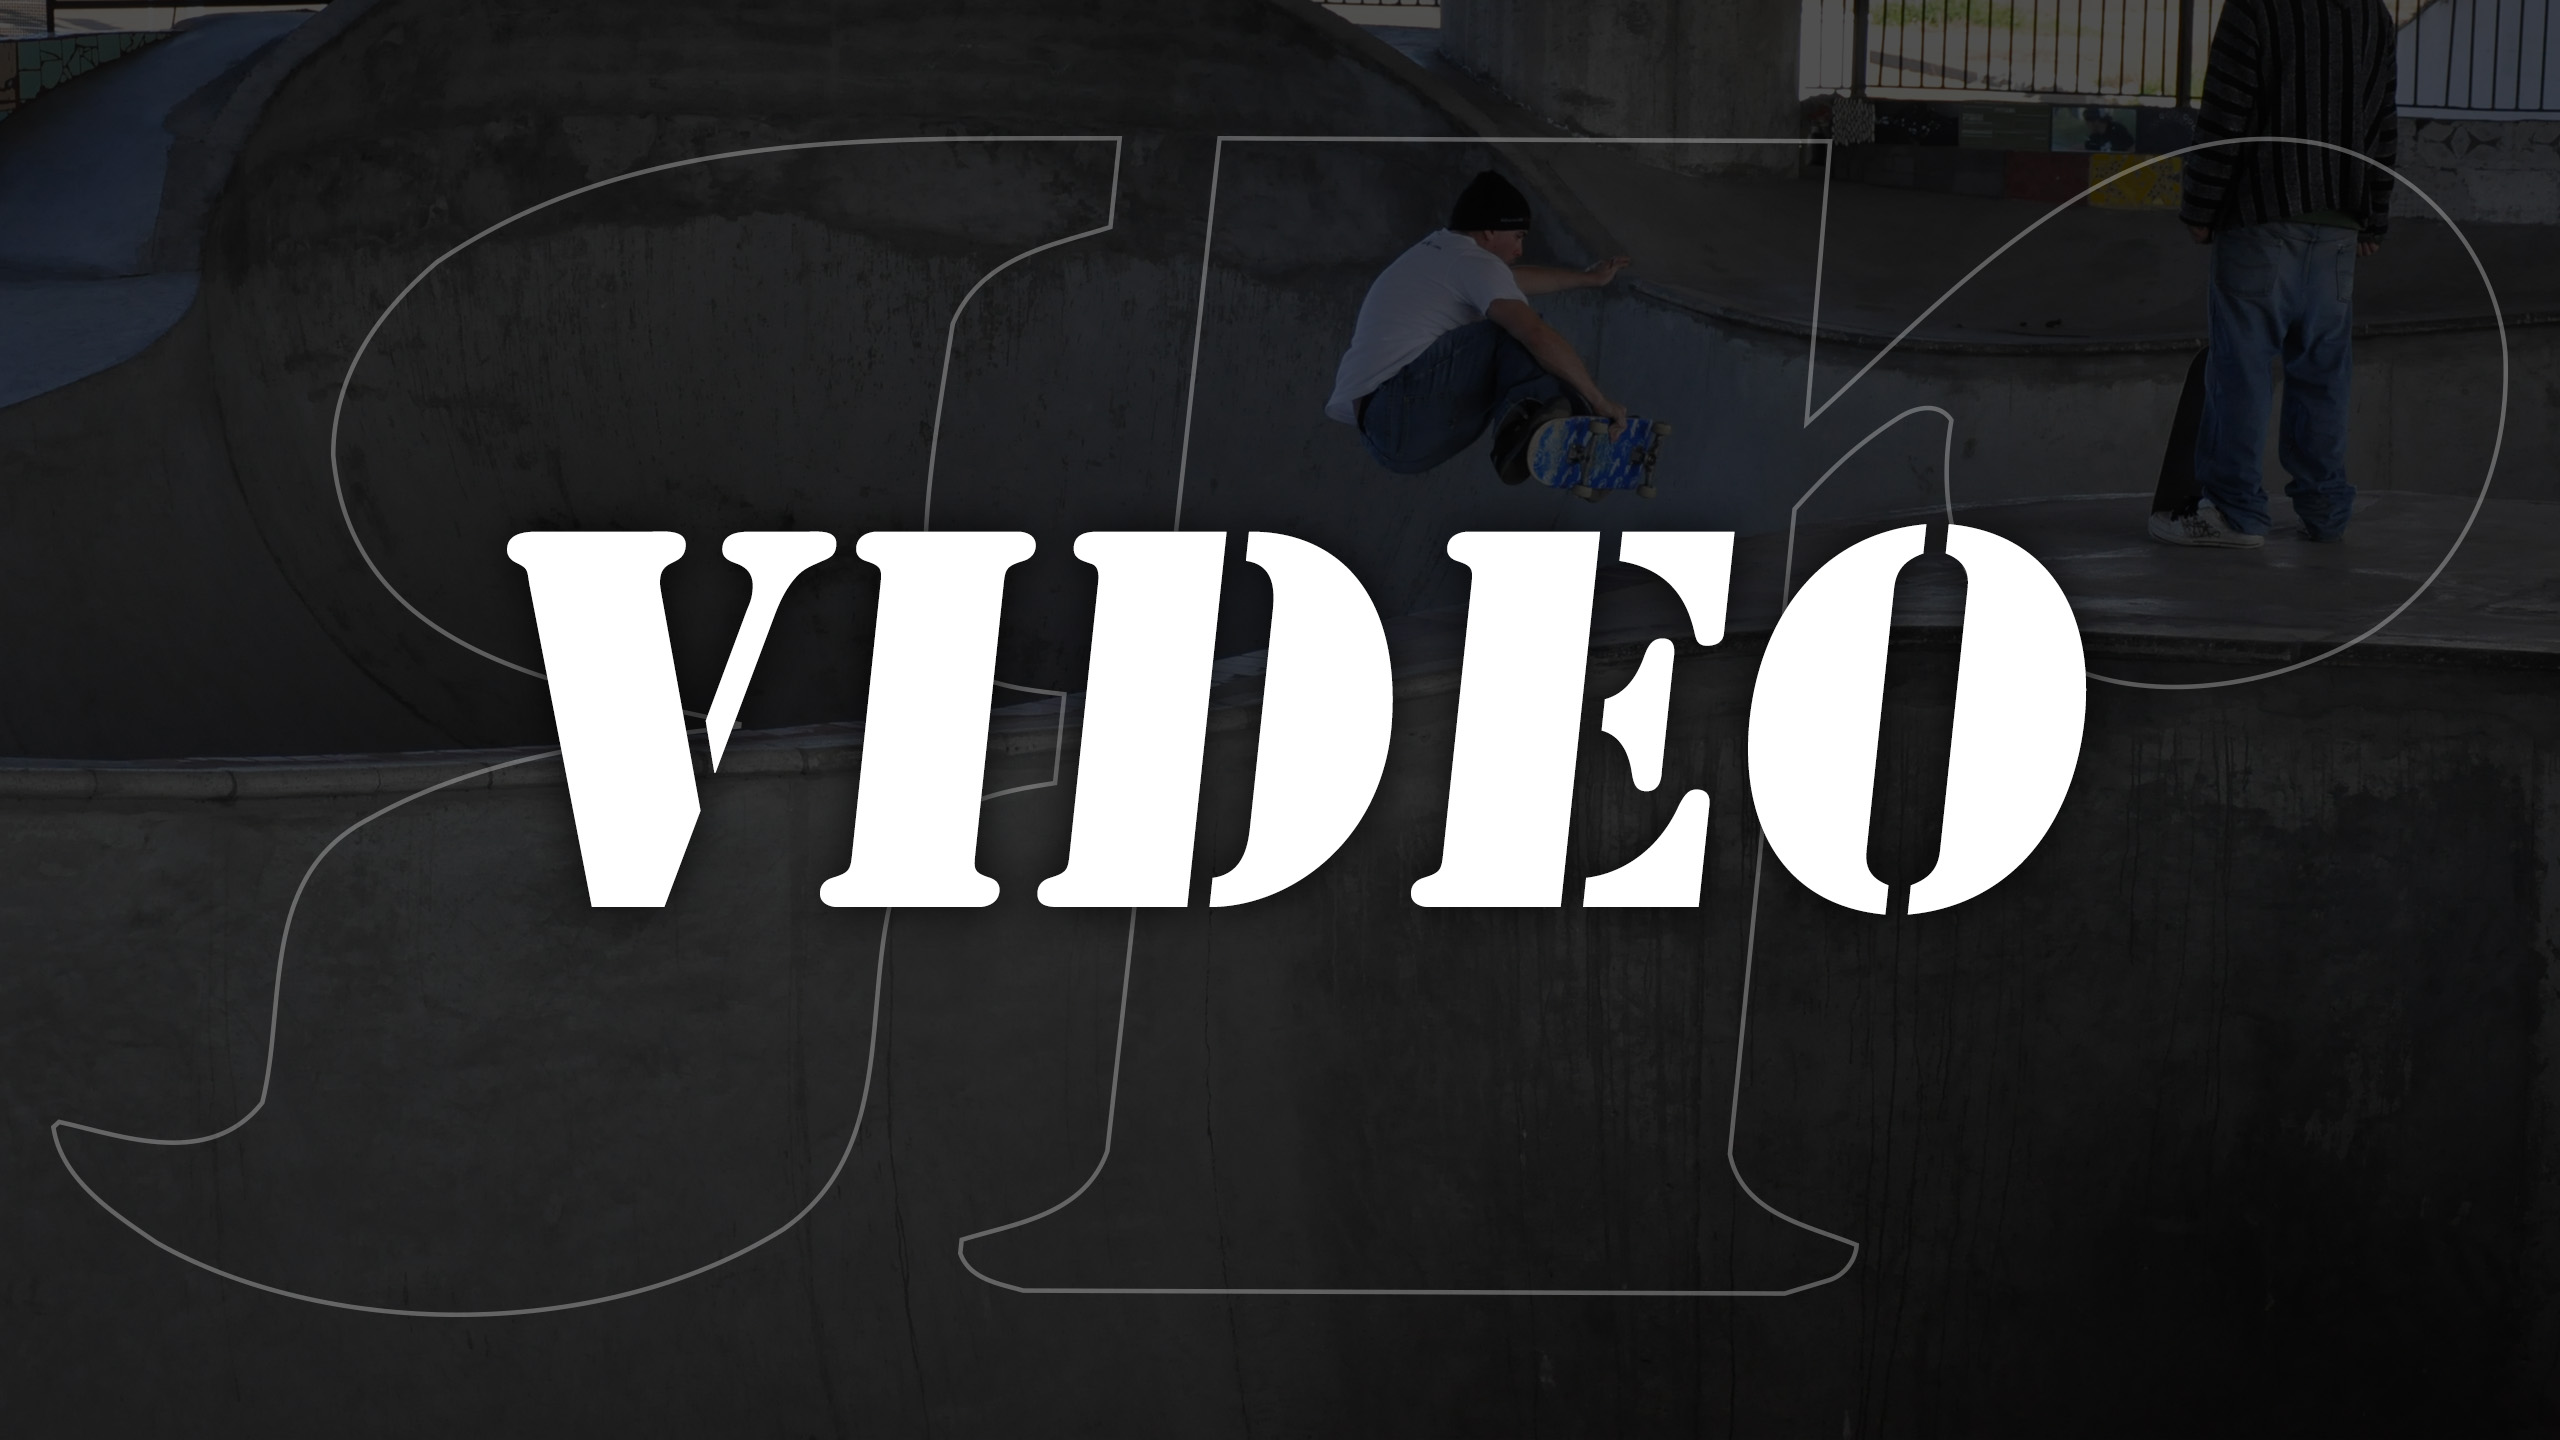 Revoked Skateboard Video Footage